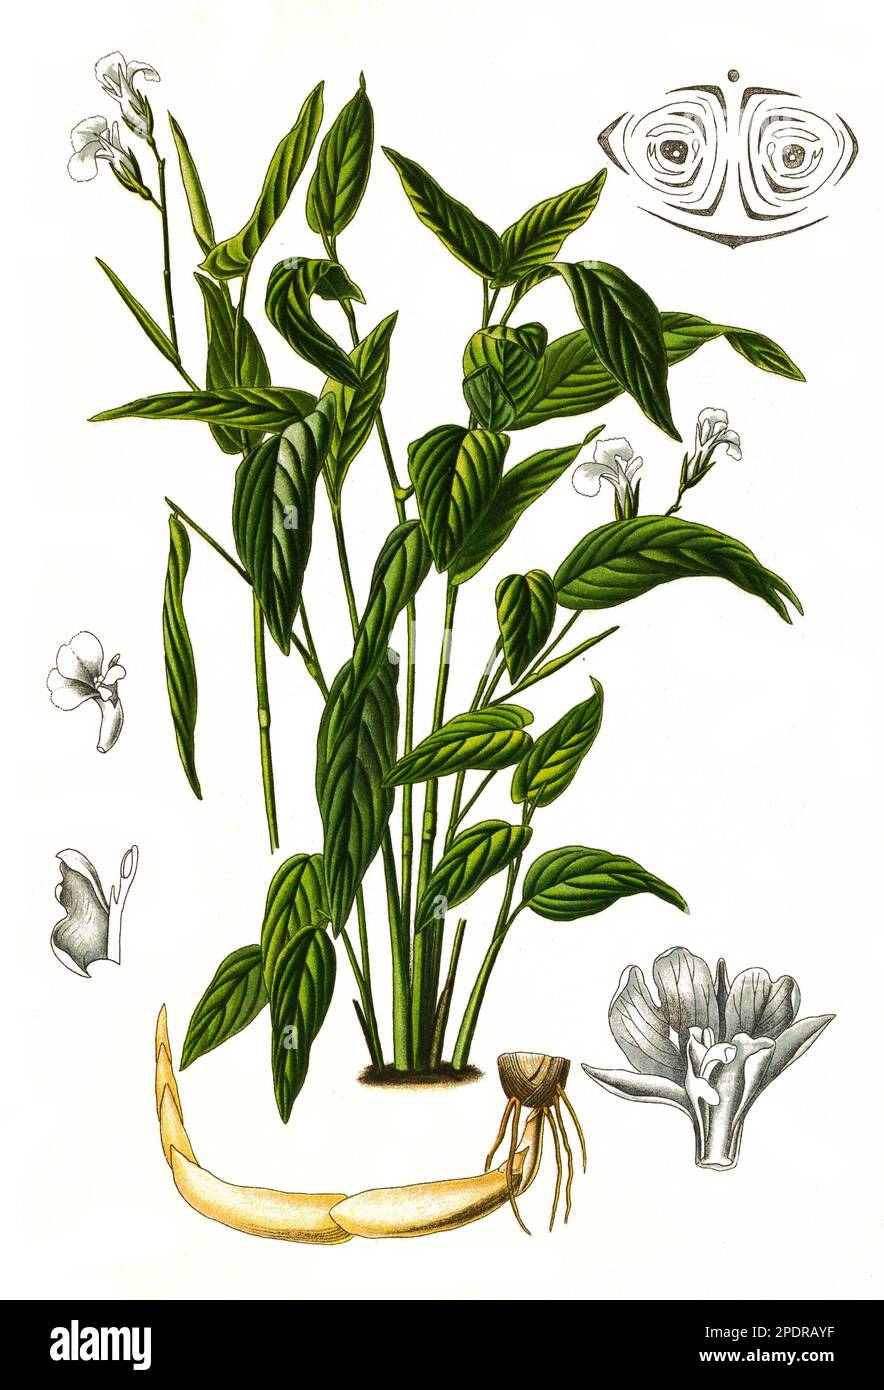 Maranta arundinacea ist eine Nutzpflanze. Aus ihr wird das sogenannte Pfeilwurzelmehl gewonnen, Pfeilwurz, Historisch, digital restaurierte Reproduktion von einer Vorlage aus dem 18. Jahrhundert, Stock Photo